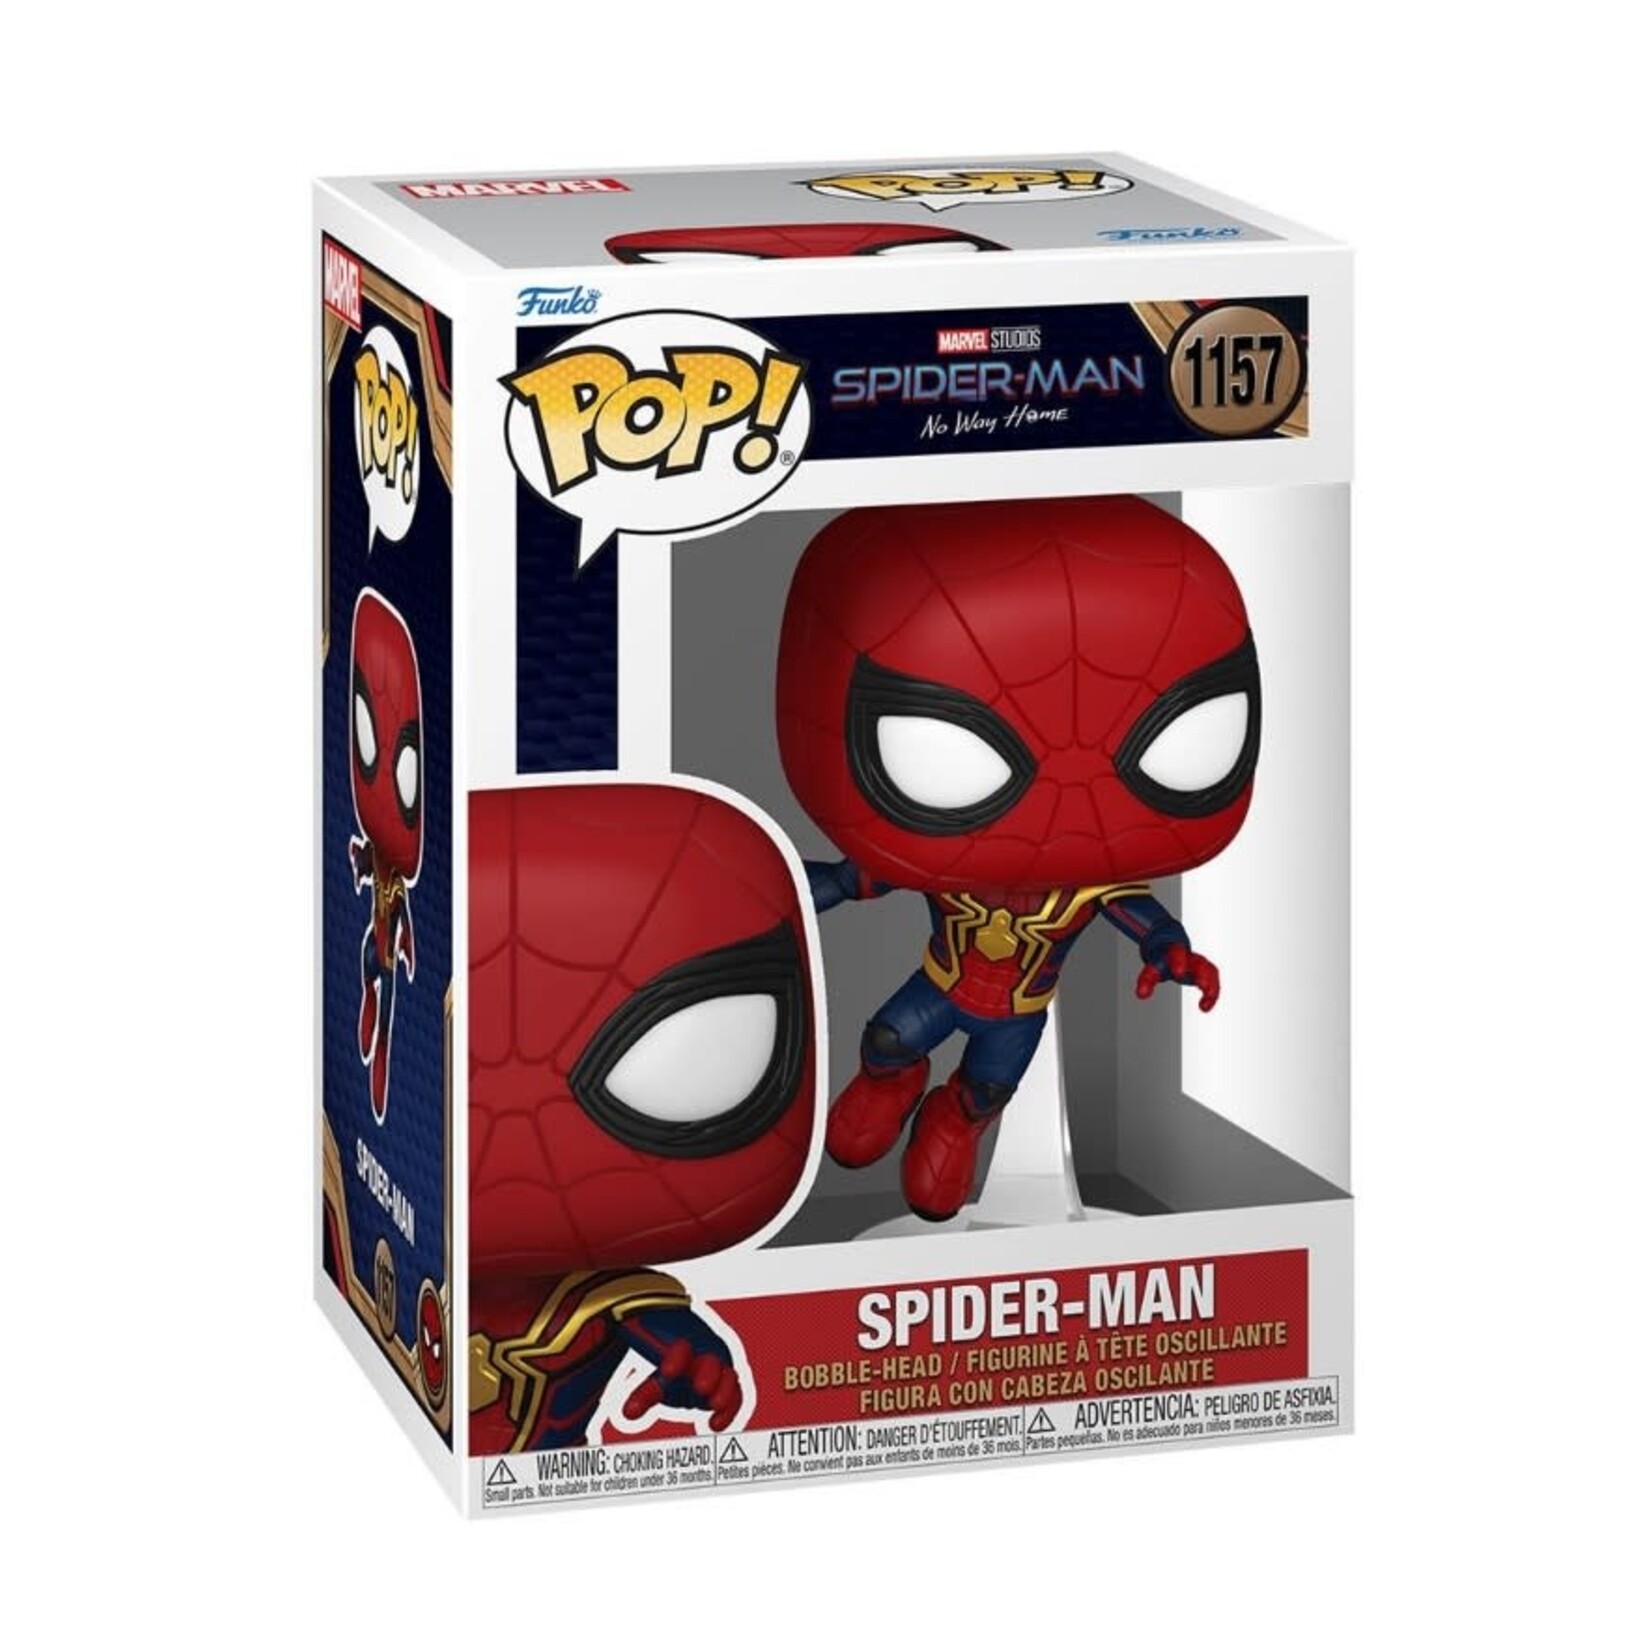 Spider-Man Spider-Man: No Way Home - Spider-Man Funko Pop! Figure